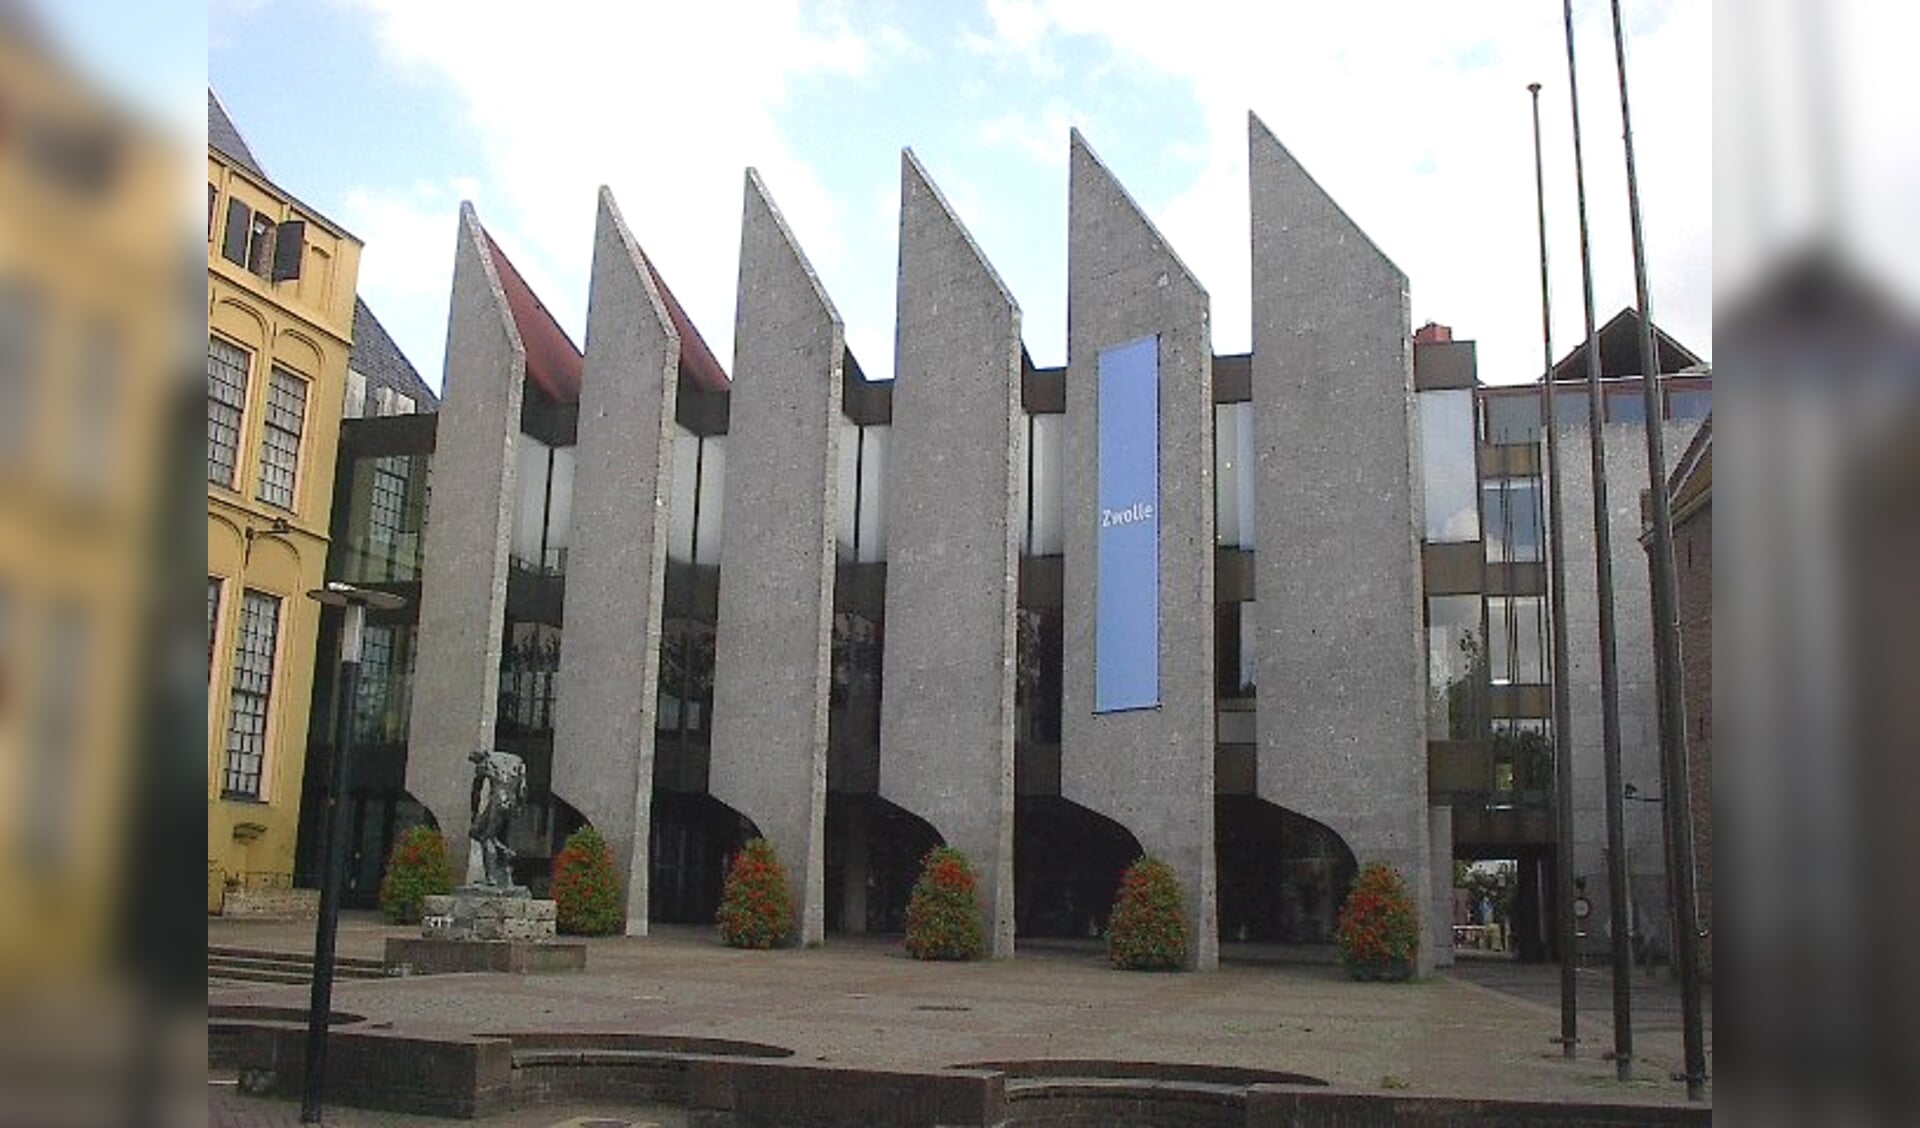 Stadkamer (bibliotheek) verhuist in januari naar Stadhuis